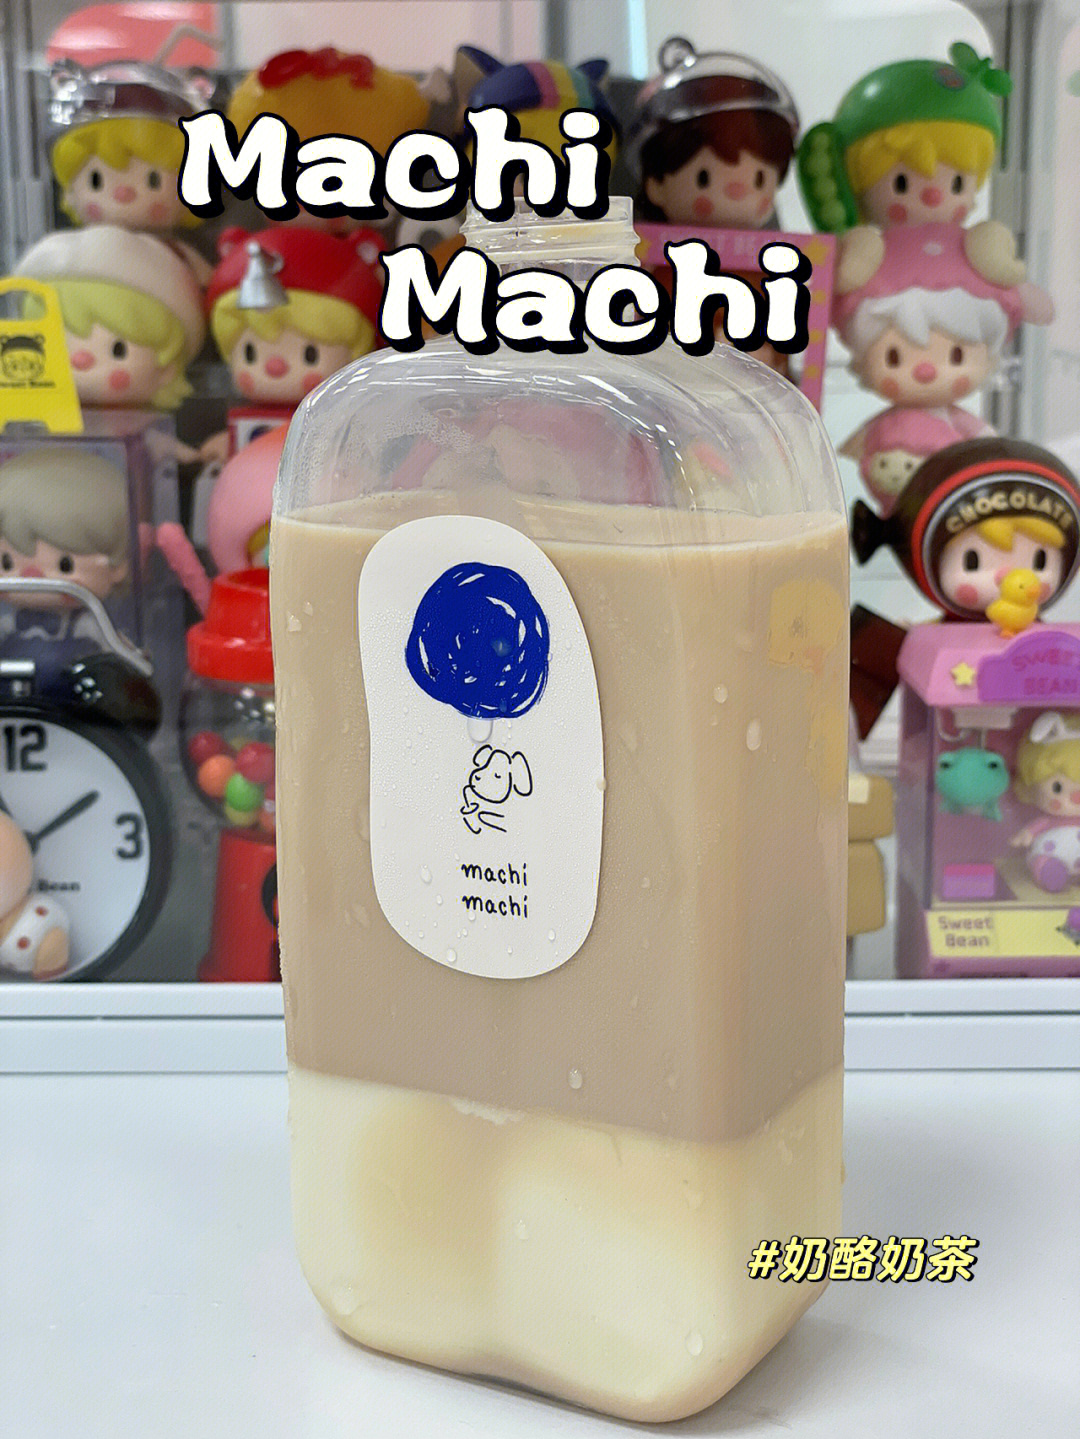 machi啦99奶酪奶茶正常冰三分糖,有台湾奶茶的味道,不会很甜但很浓